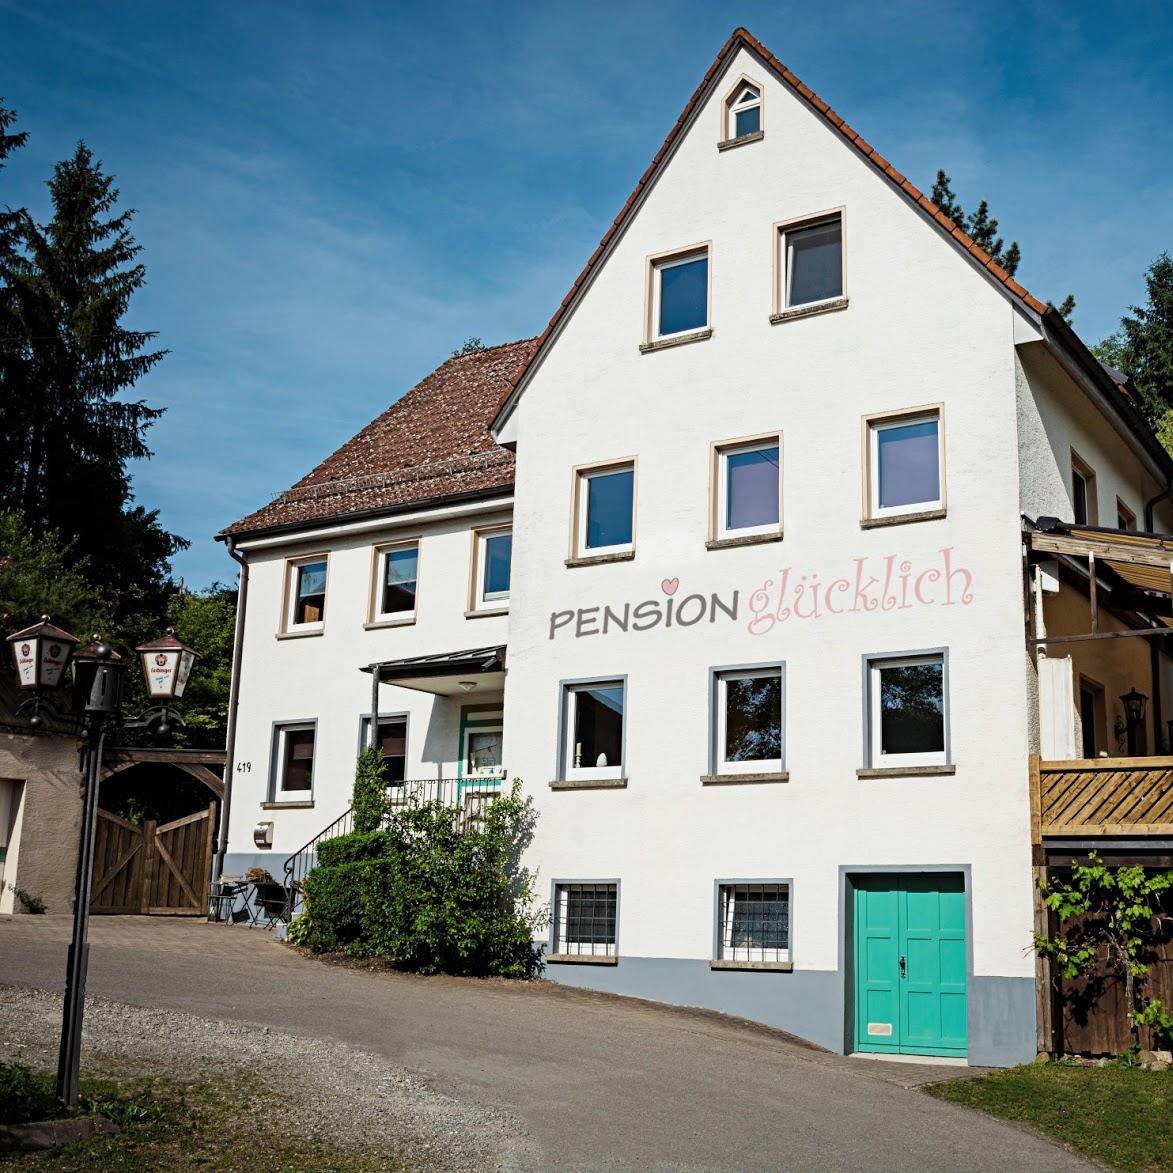 Restaurant "Pension Glücklich in der Ibs-Mühle" in Horgenzell